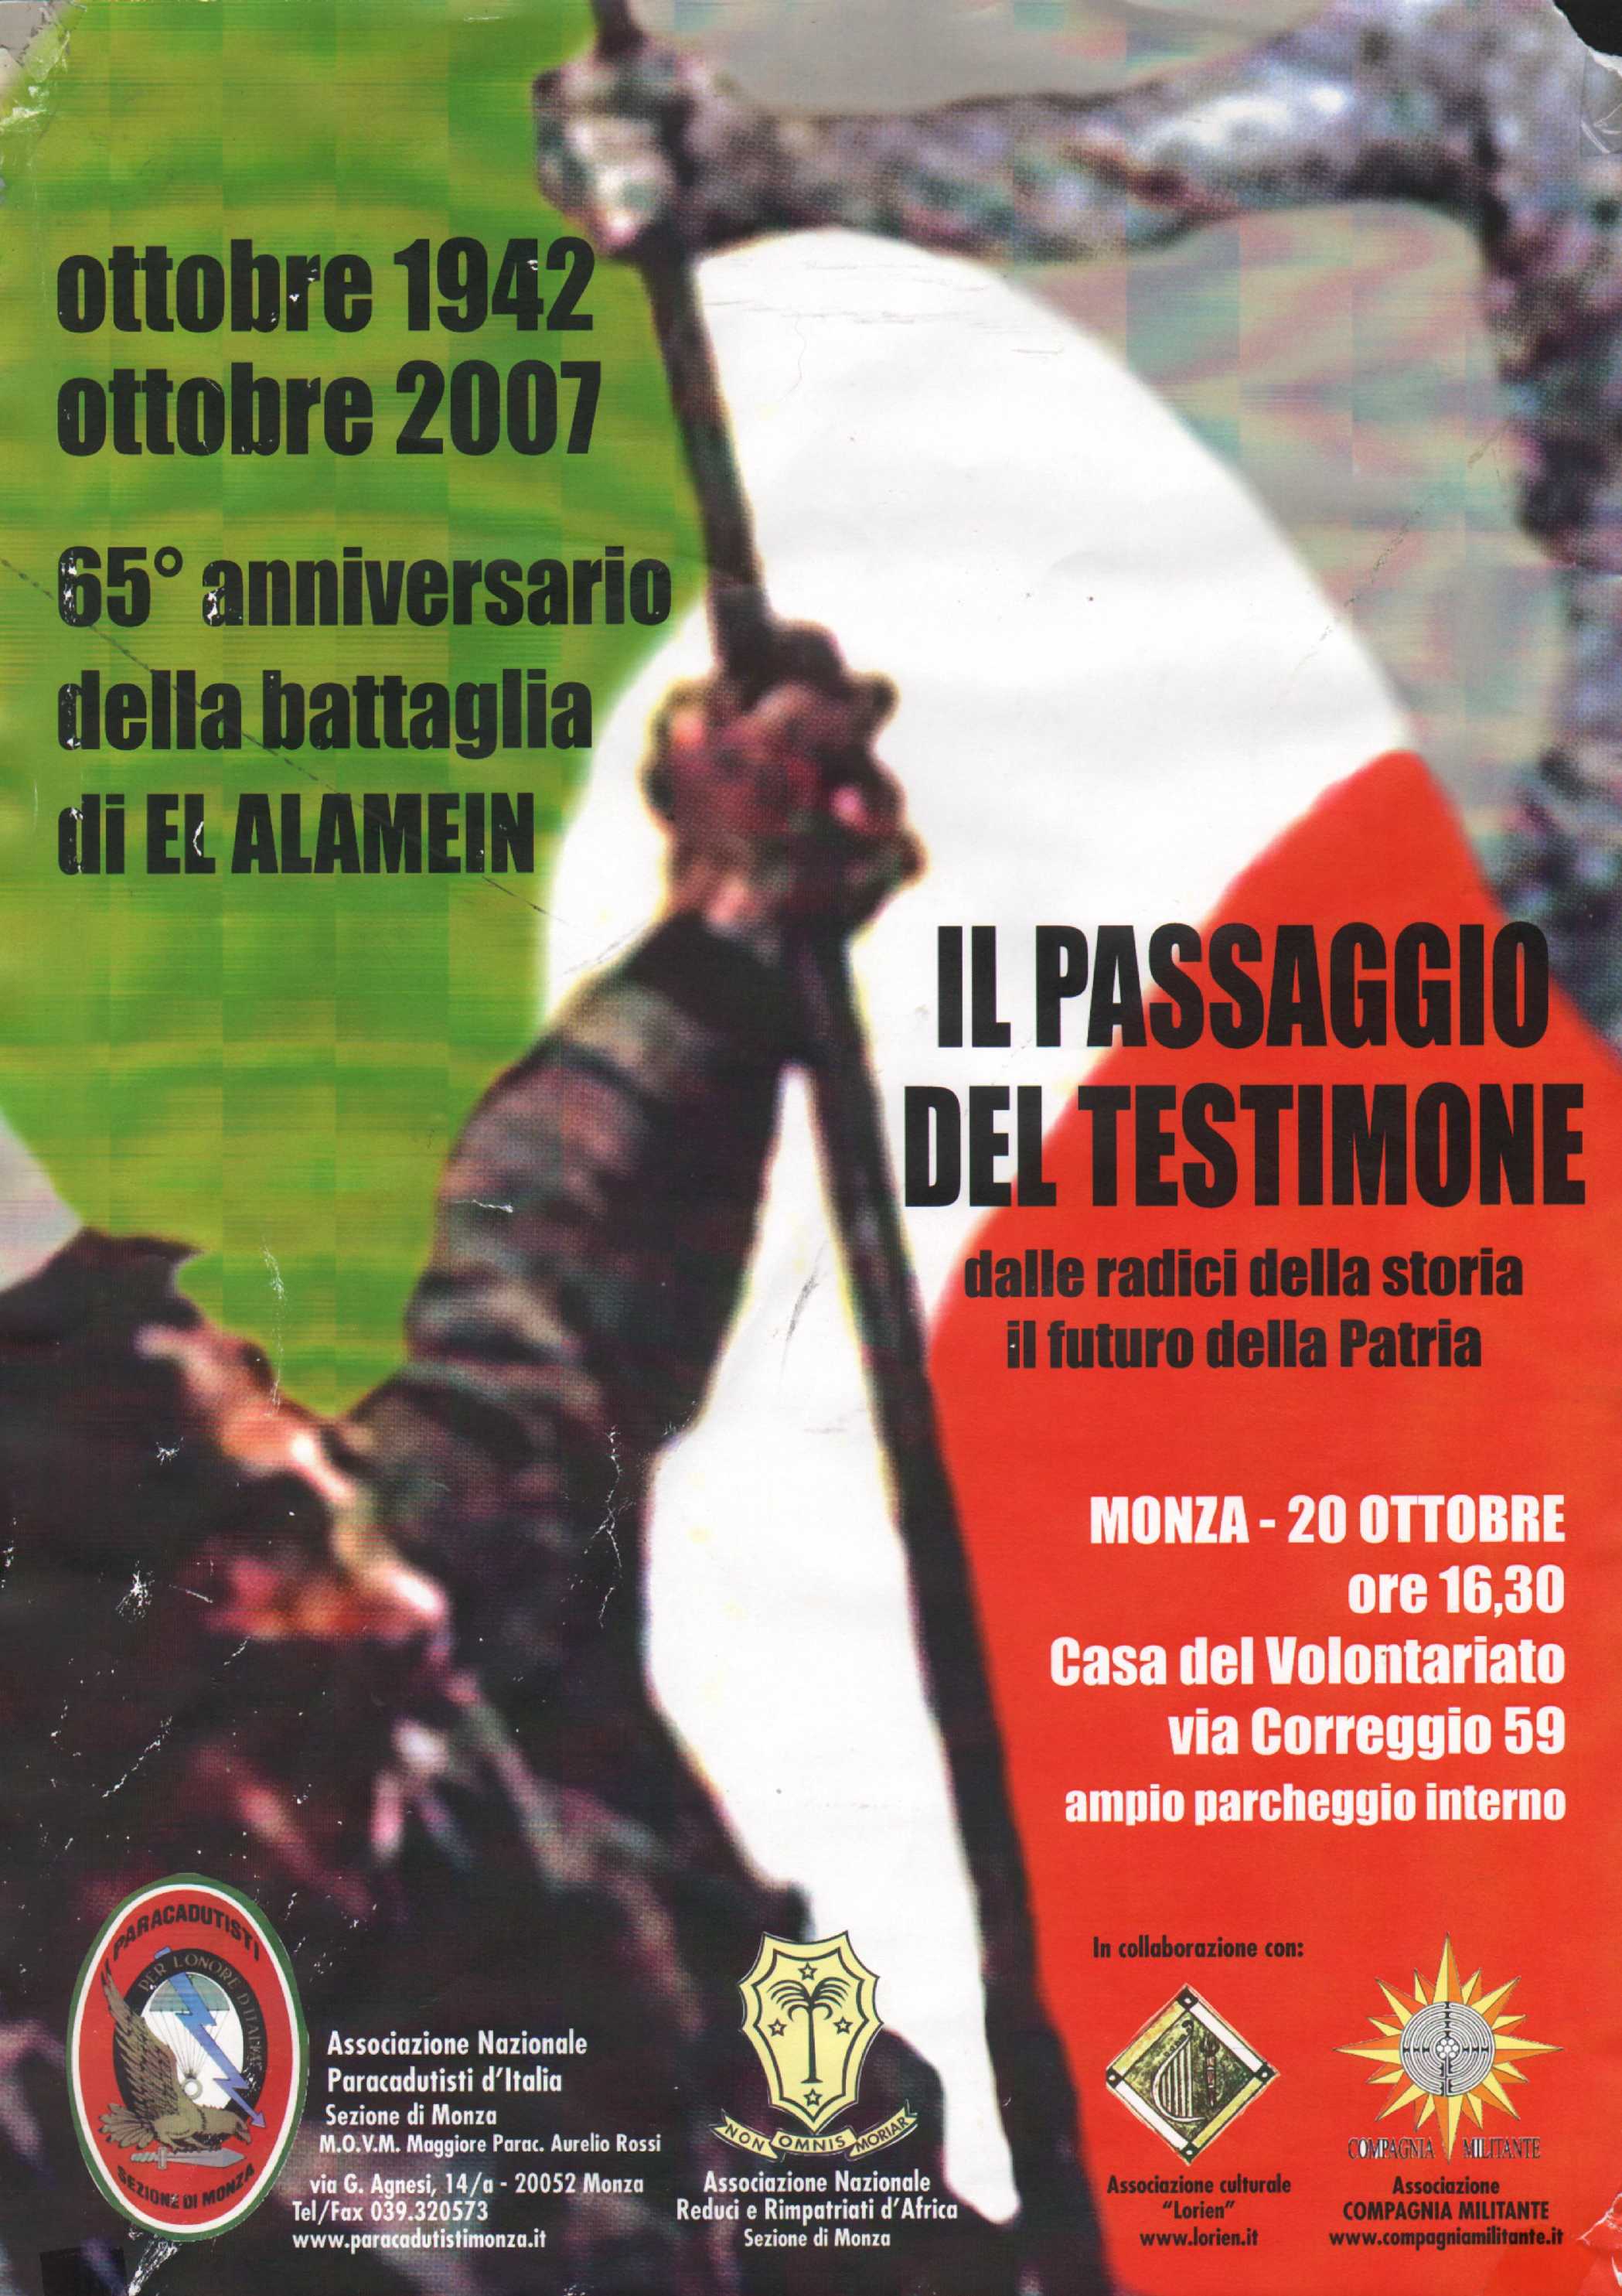 20 ottobre 2007 Monza - Il passaggio del testimone